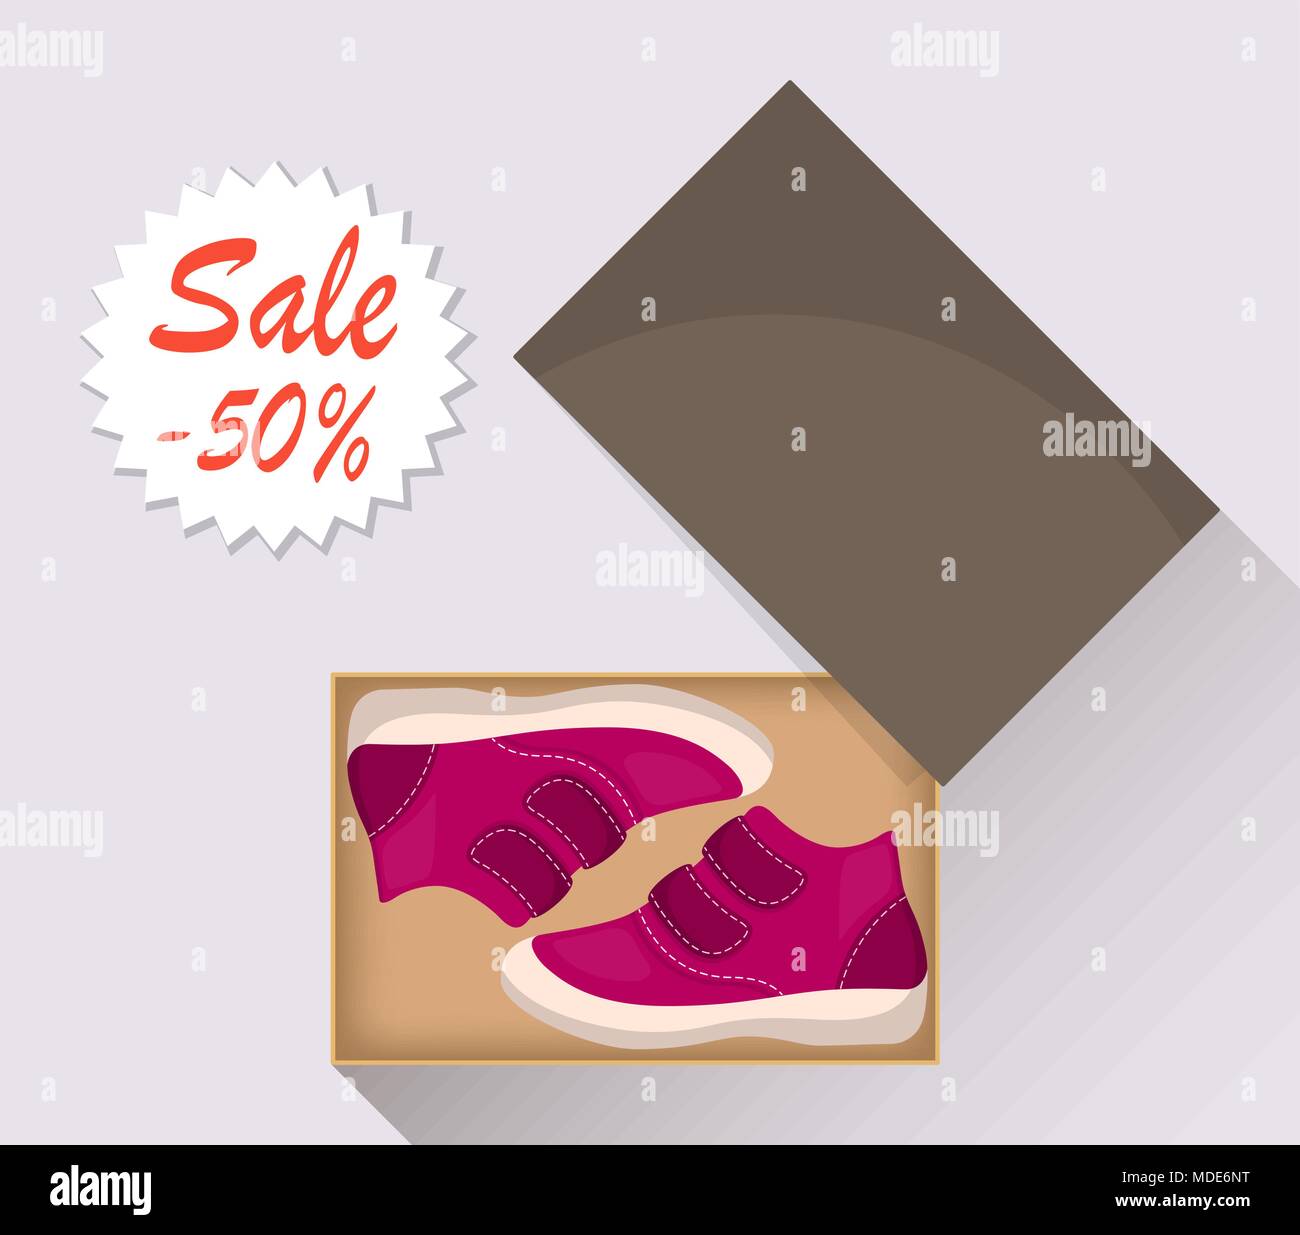 Kleinen niedlichen Baby Schuhe im Karton, Seitenansicht. Verkauf mit einem Rabatt von 50 Prozent. Kid's Casual rosa Stiefel. Illustration für ein Schuhgeschäft. Vektor Flachbild illu Stock Vektor